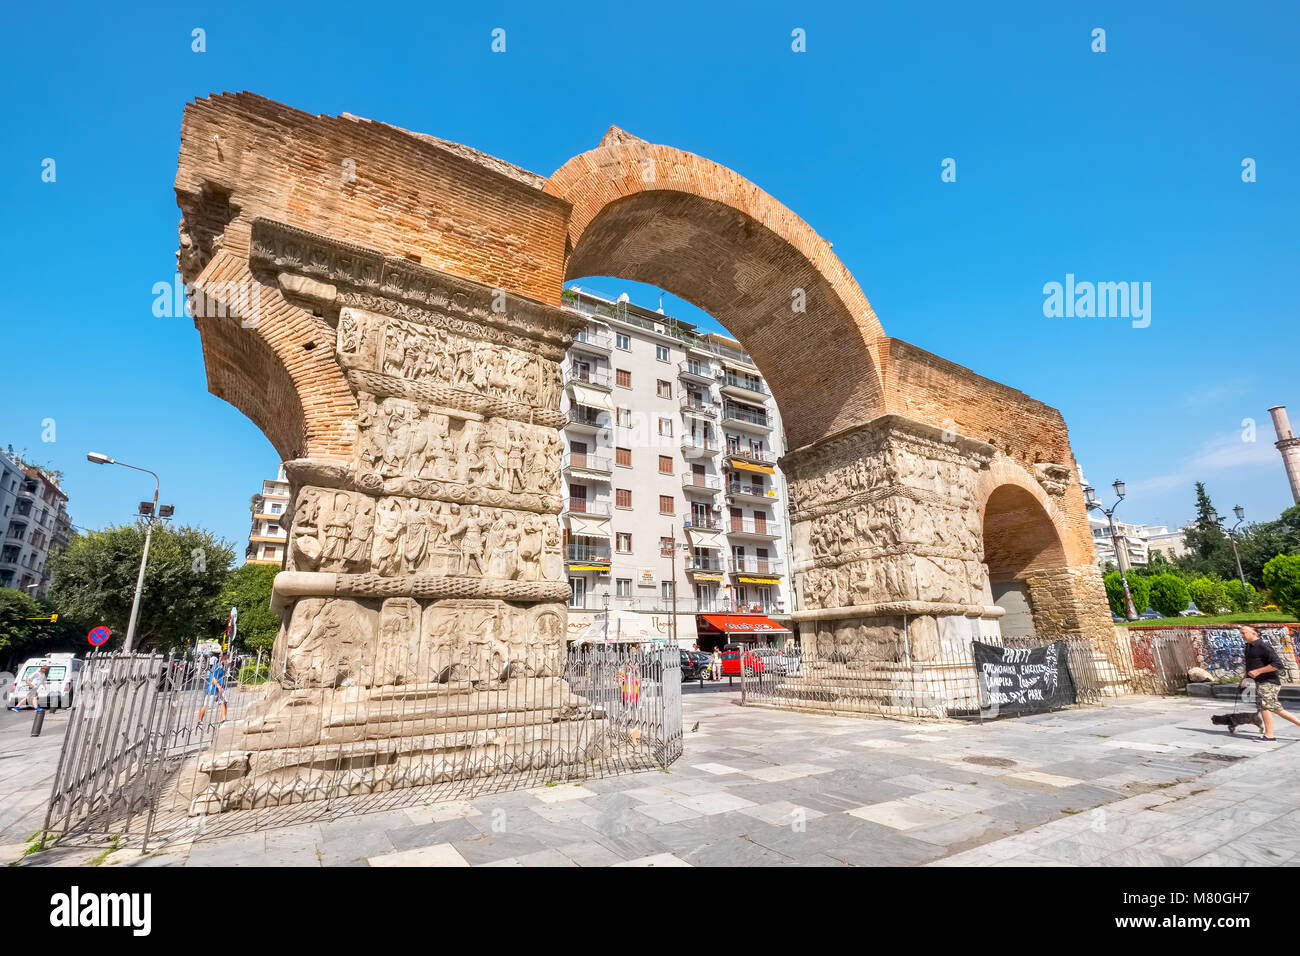 Der Triumphbogen des Galerius (Kamara) eine der wichtigsten Sehenswürdigkeiten in Thessaloniki. Mazedonien, Griechenland Stockfoto